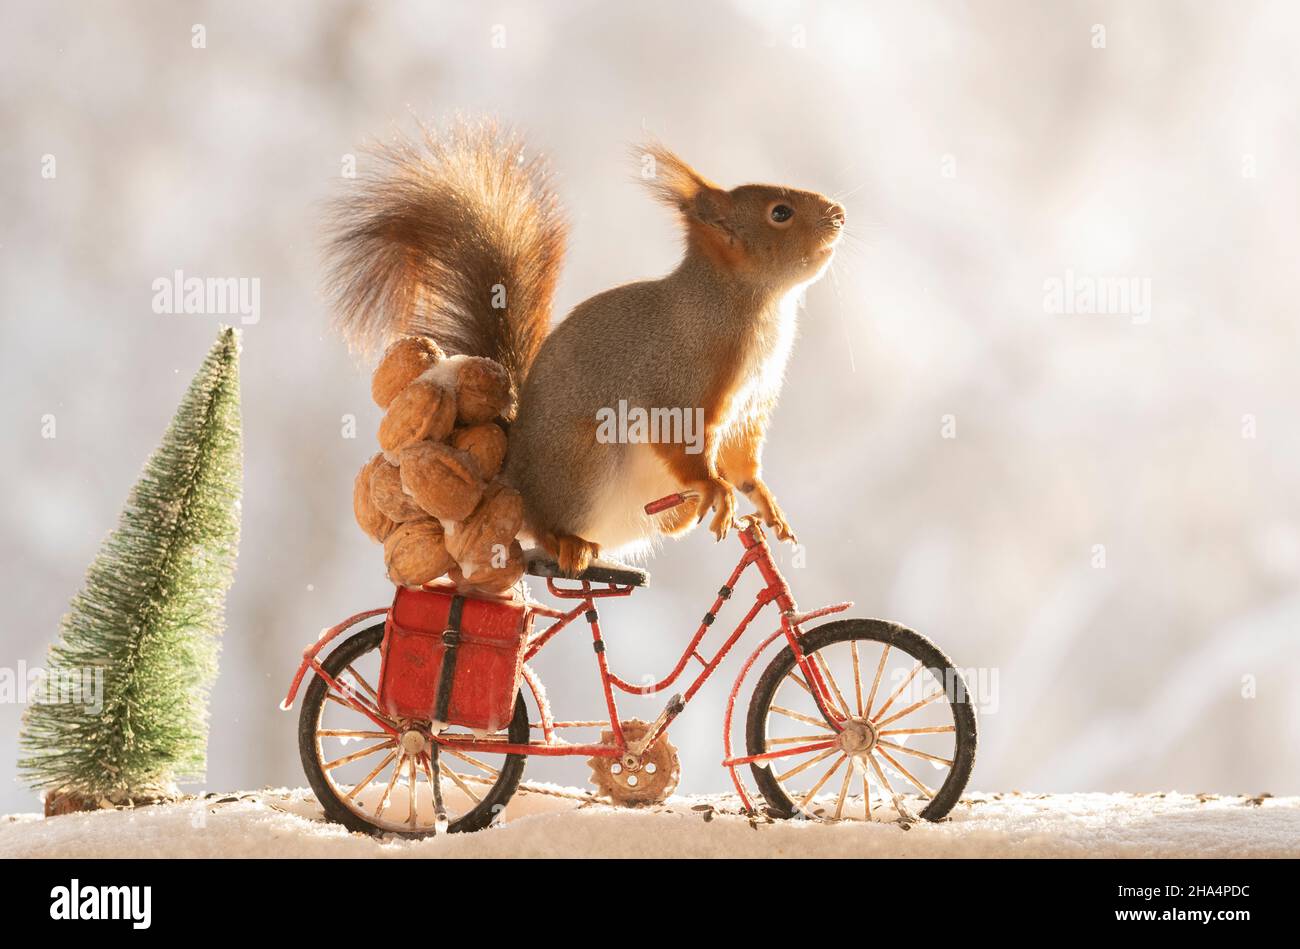 ardilla roja, sciurus vulgaris está parado en una bicicleta con nueces y nieve Foto de stock